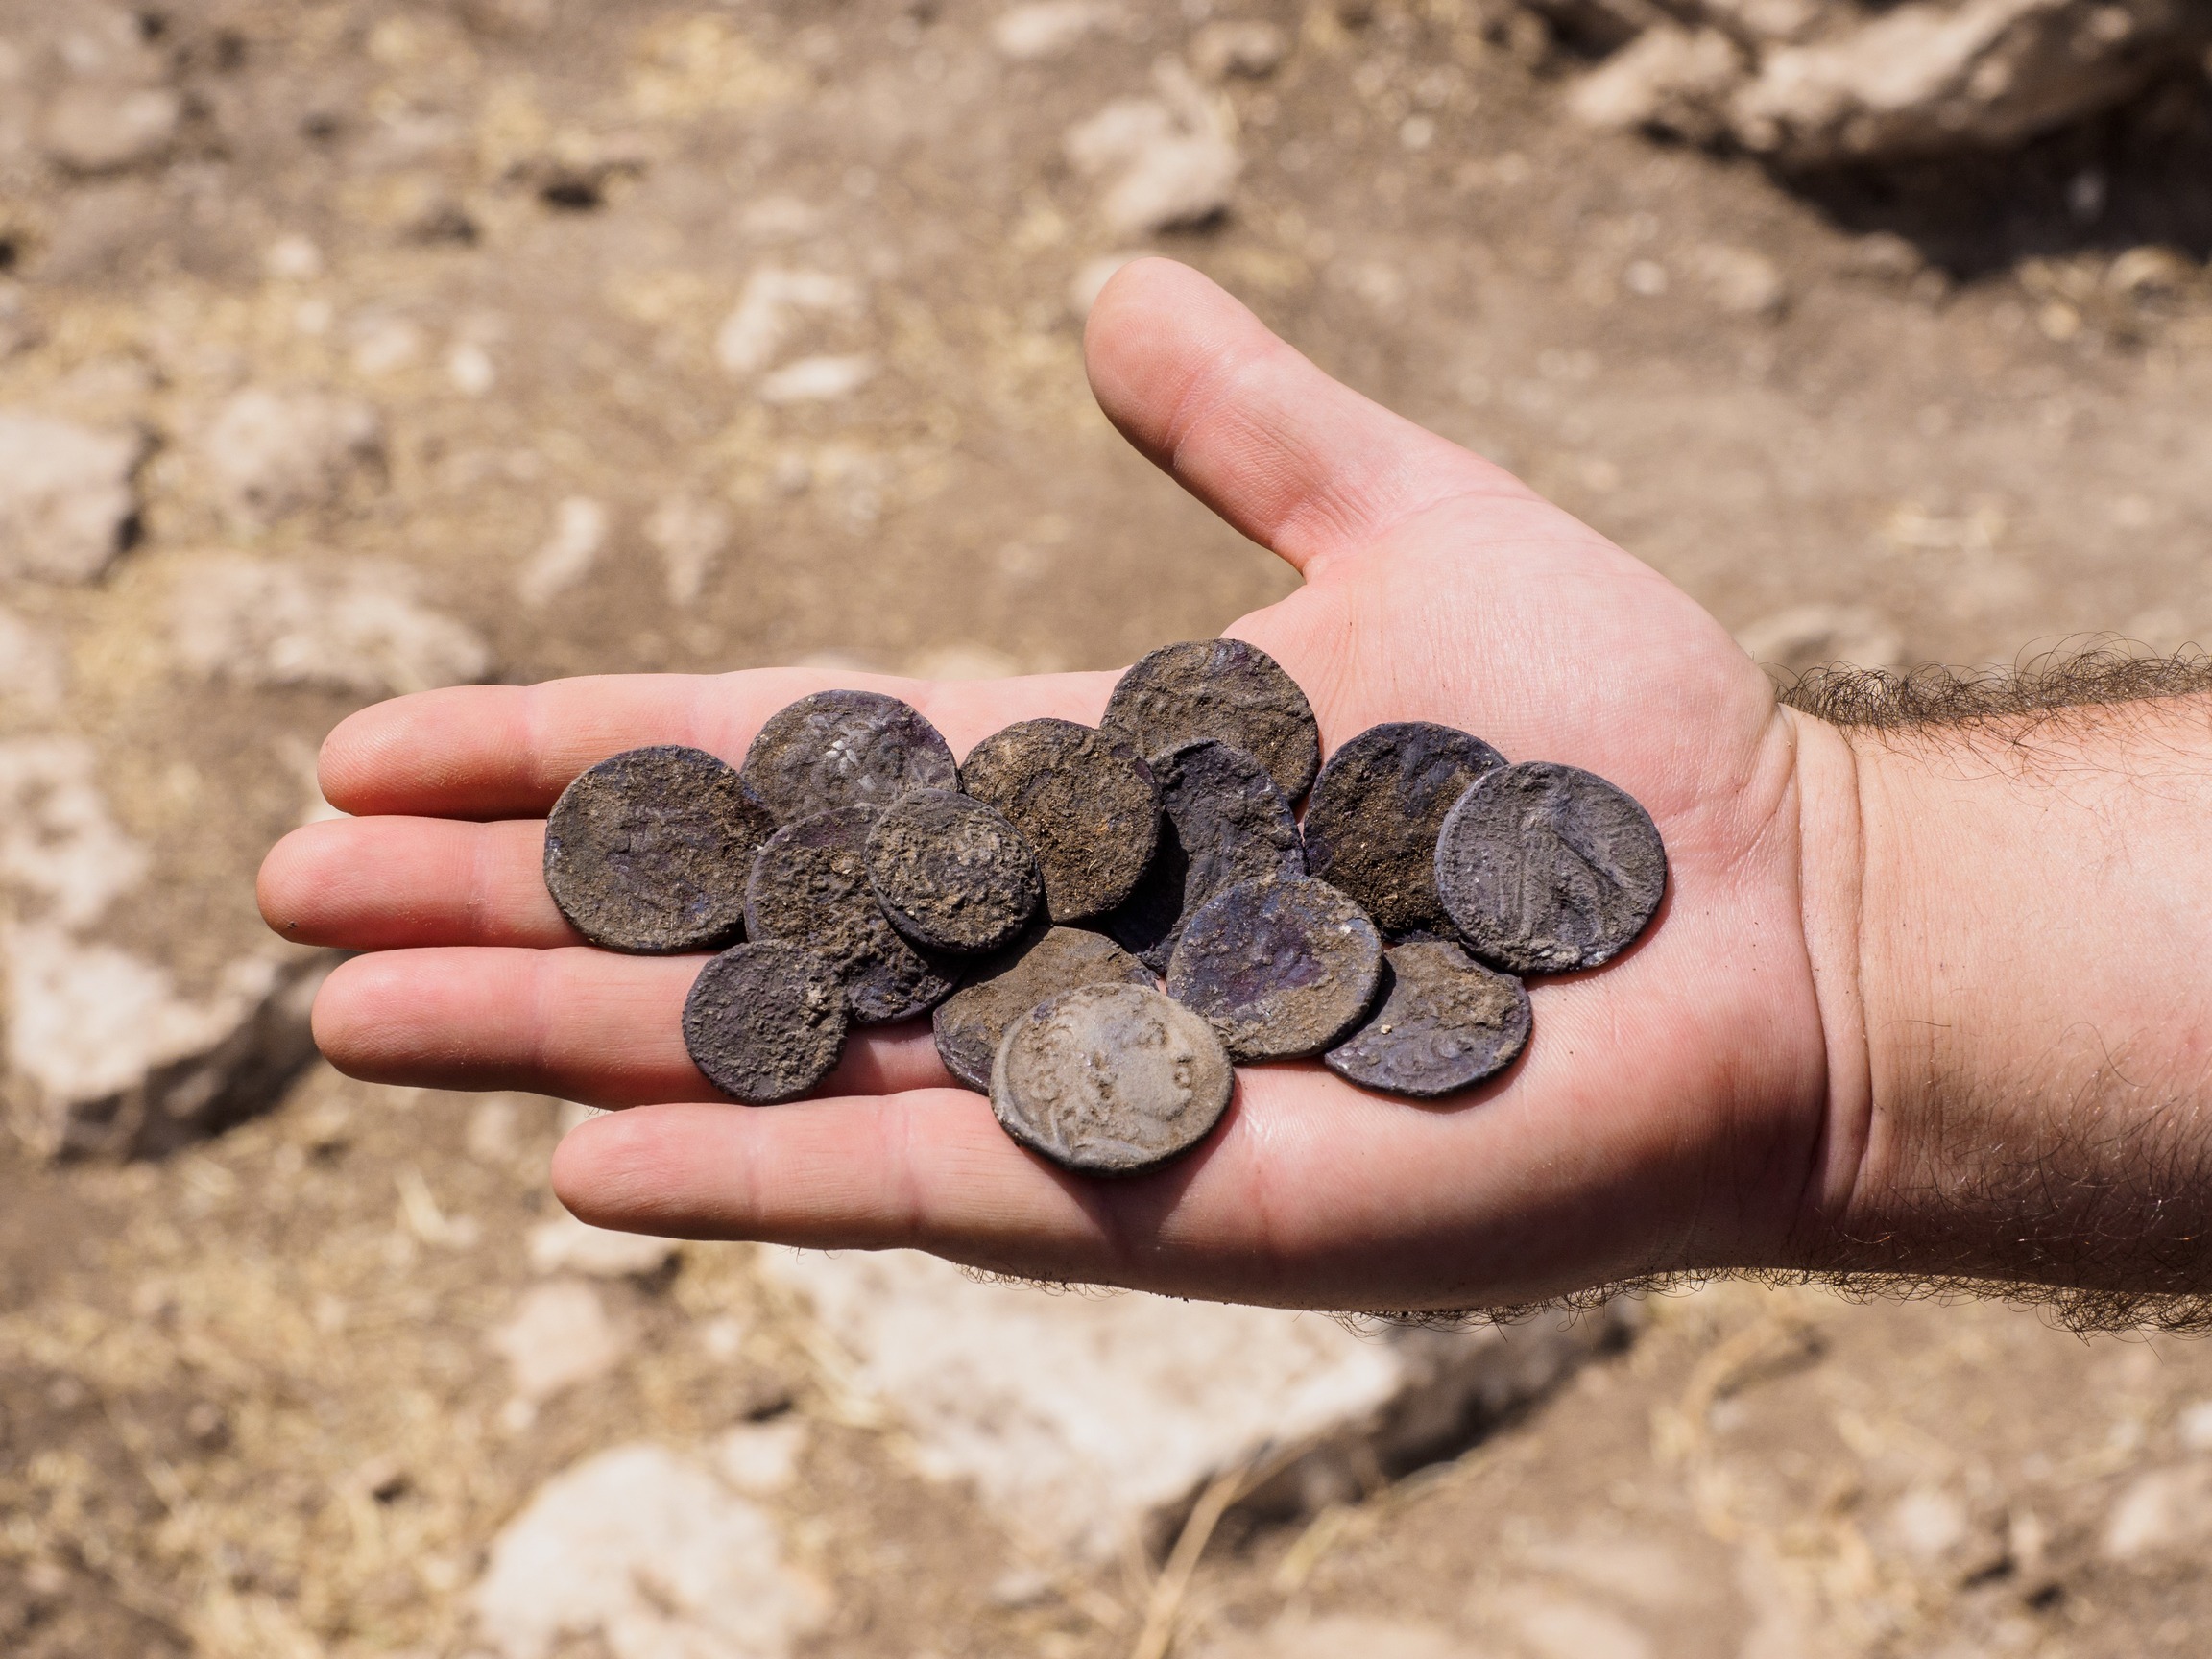 מטמון מטבעות הכסף שנמצא בבית האחוזה. צילום: אסף פרץ